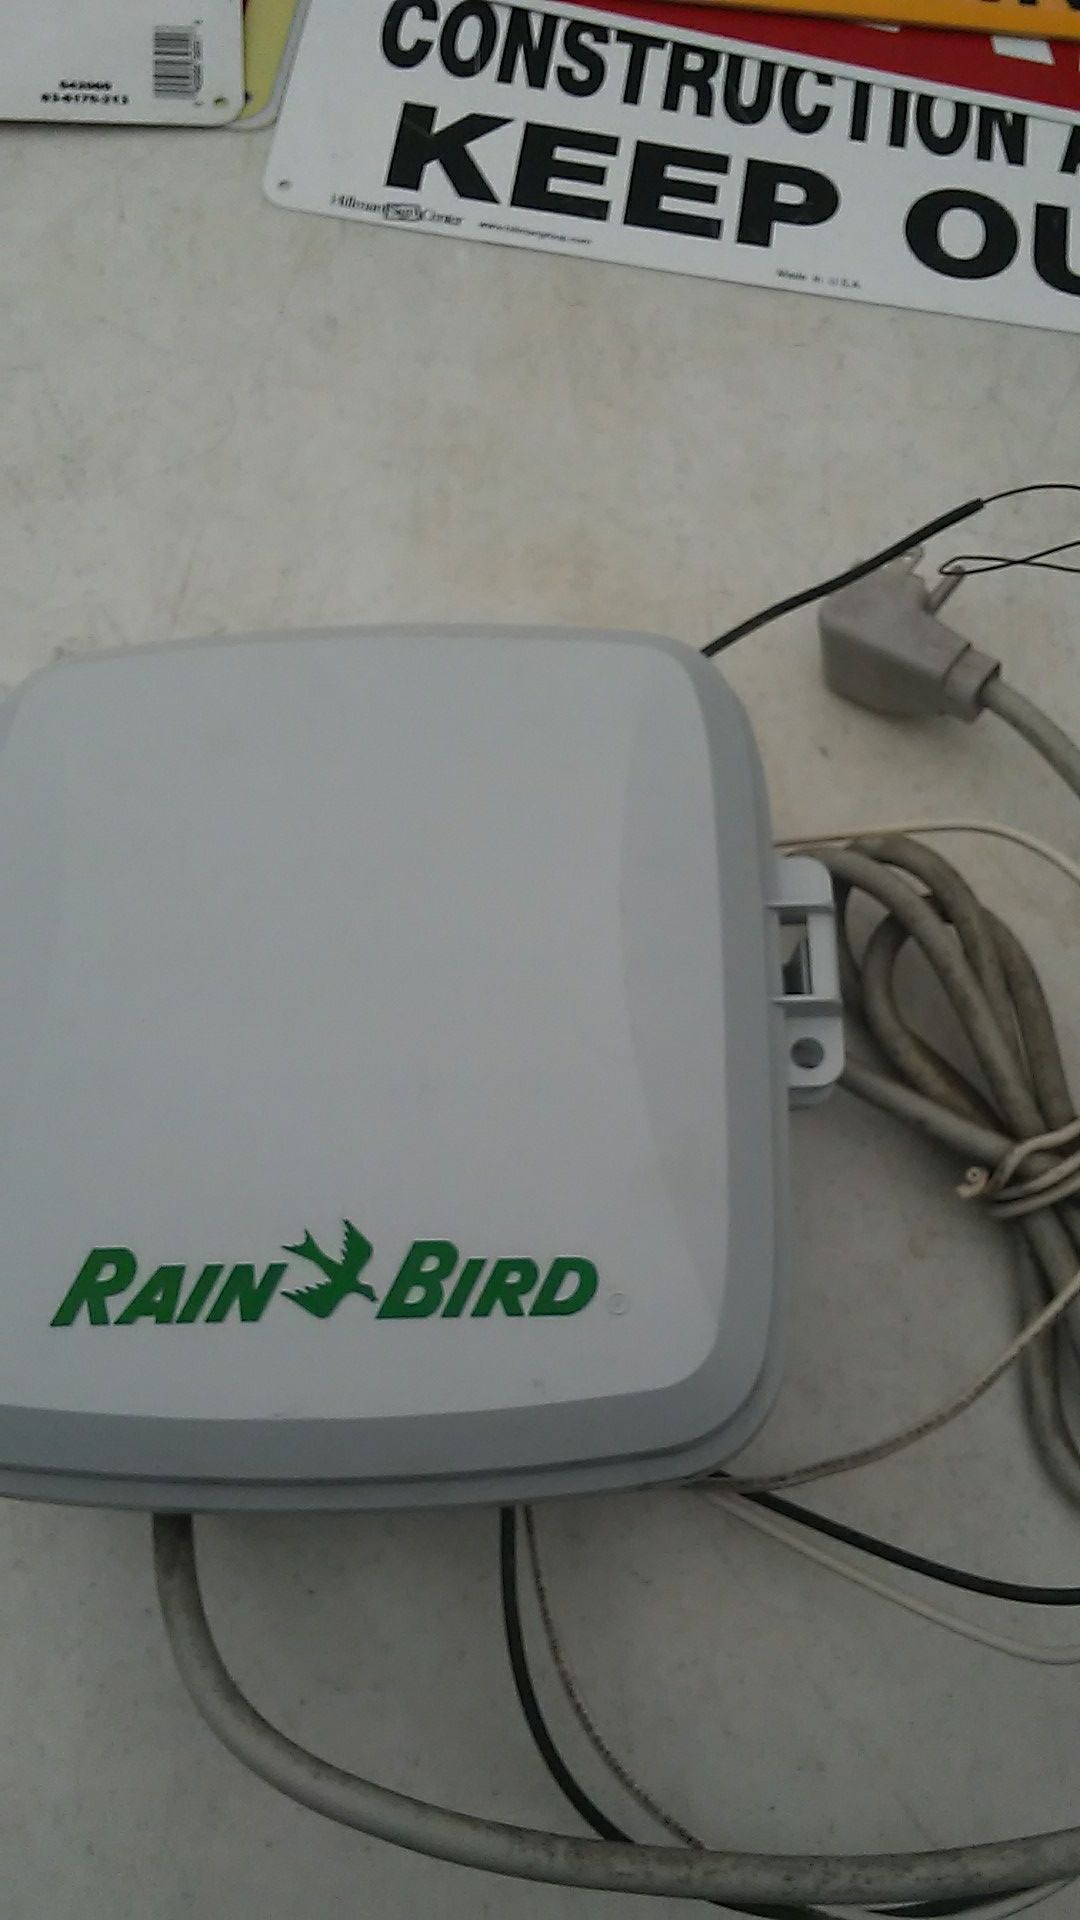 Rain bird sprinkler control